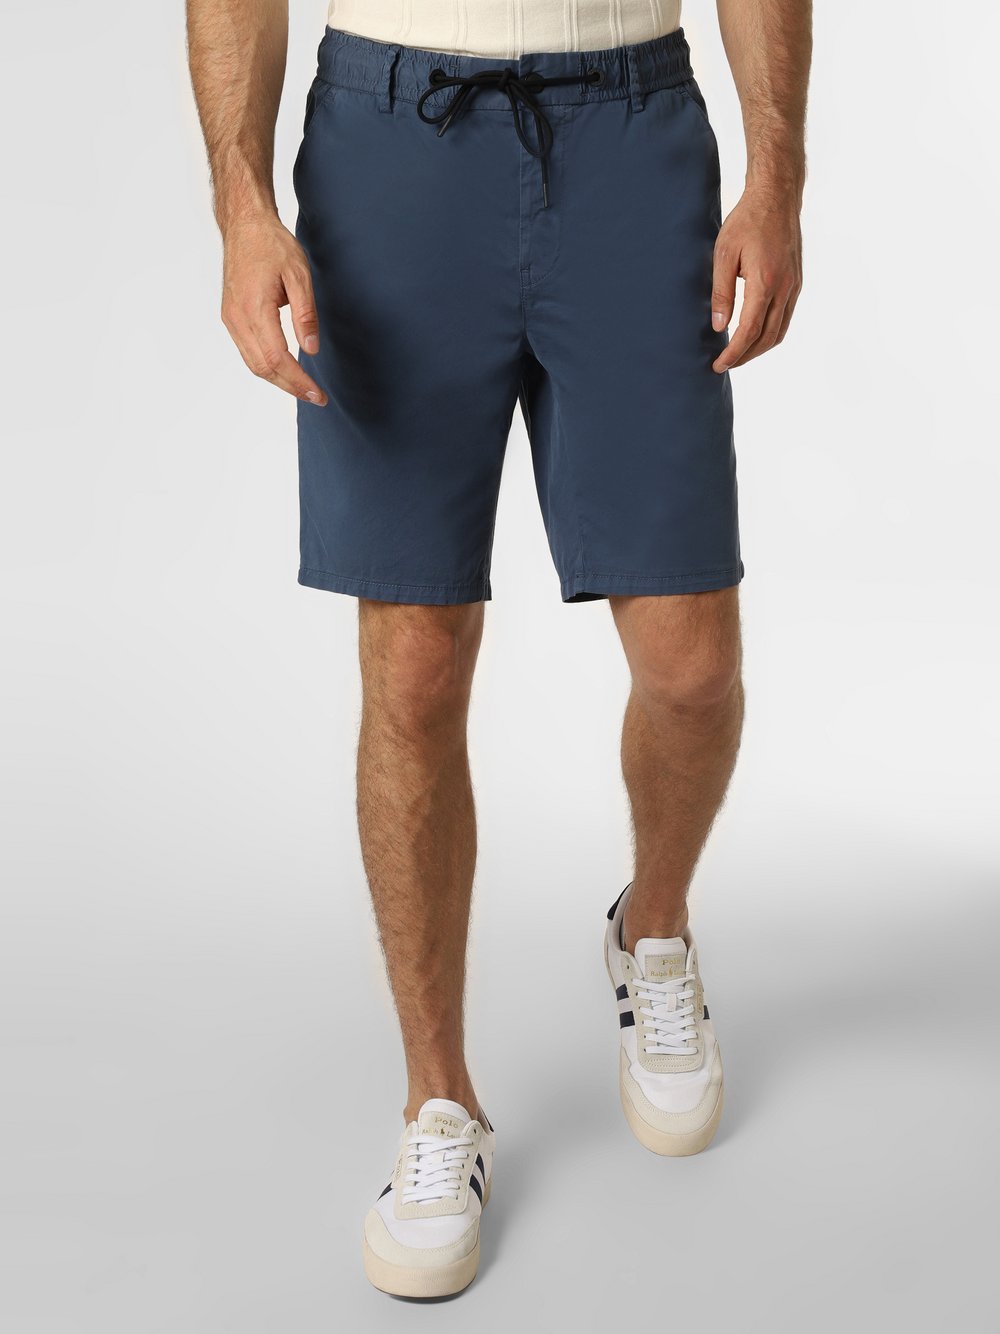 BOSS Orange - Spodenki męskie – Taber Shorts, niebieski